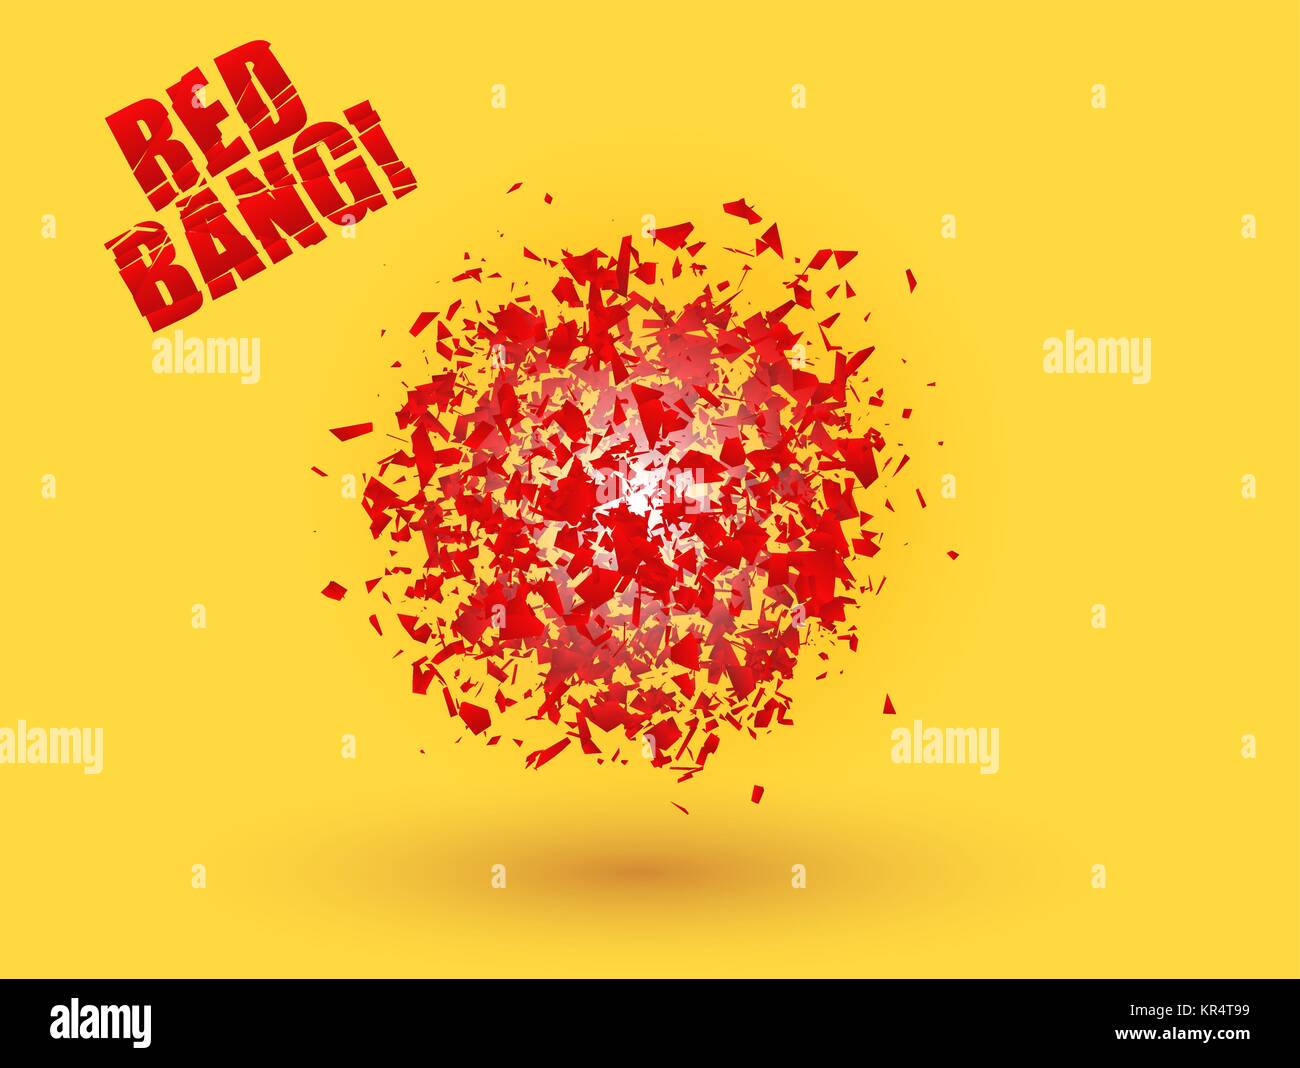 Abstrakte explosion Wolke von rot auf orange leuchtenden gelben Hintergrund. Explosive Zerstörung. Partikel von Star Burst. Expressive Vektor Stock Vektor